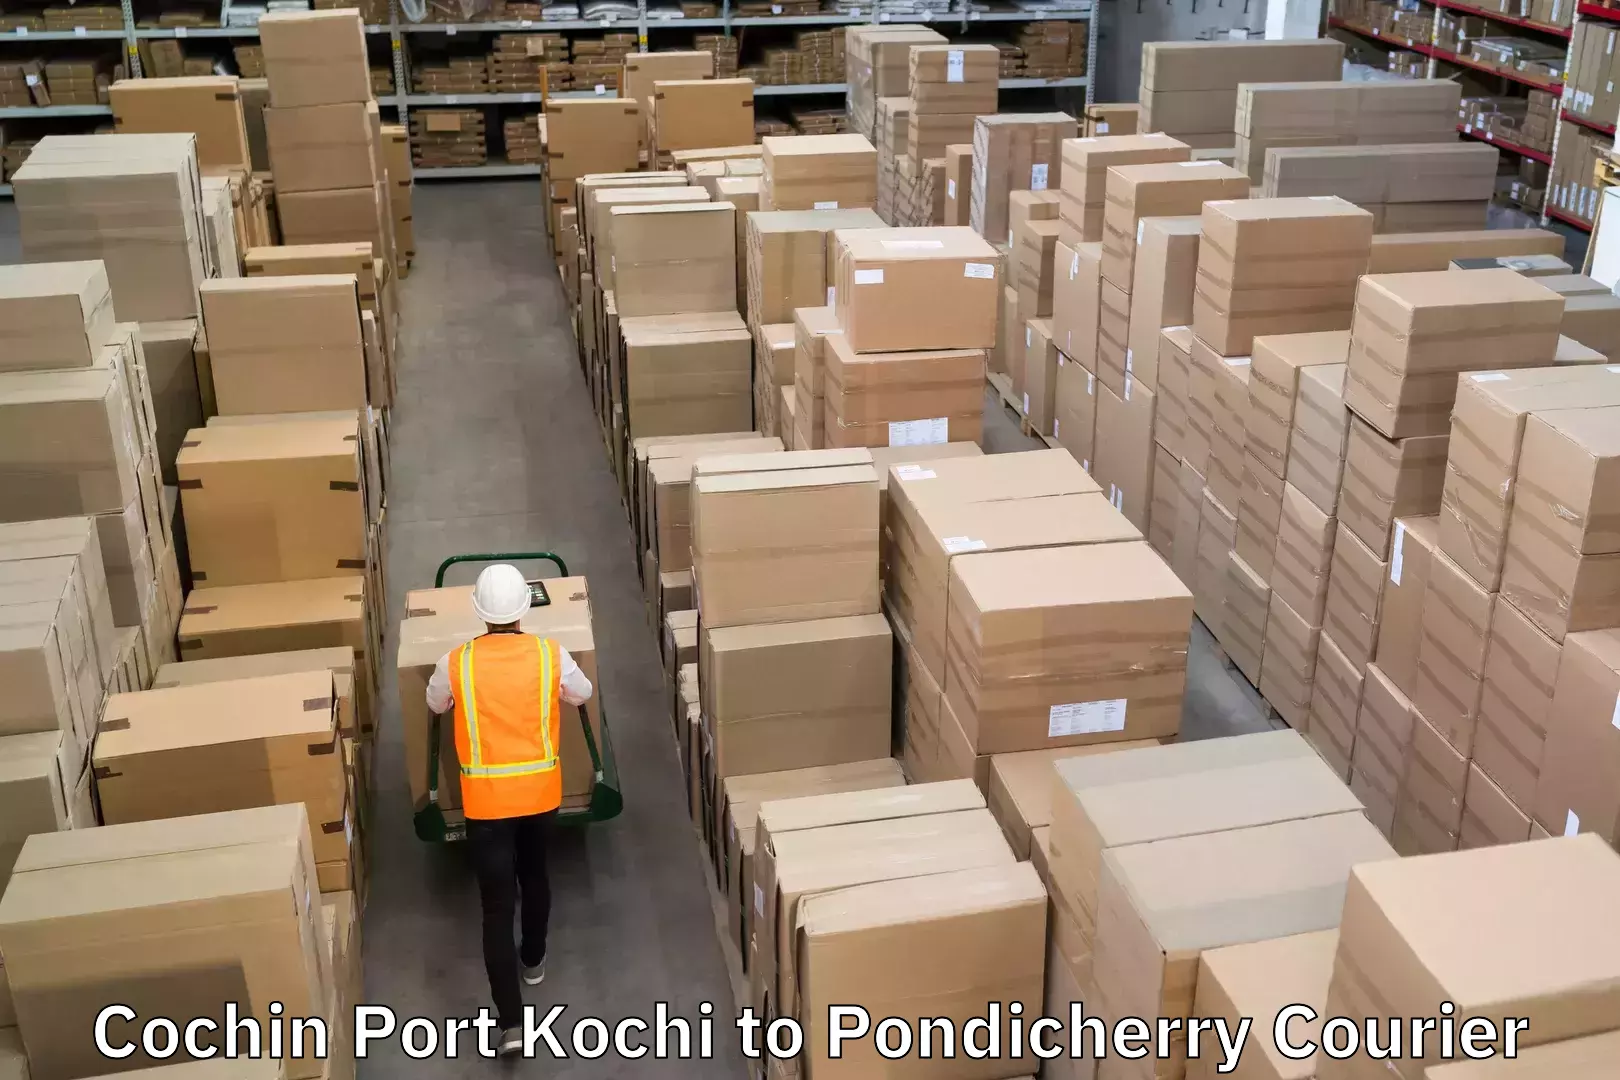 Next-generation courier services Cochin Port Kochi to Pondicherry